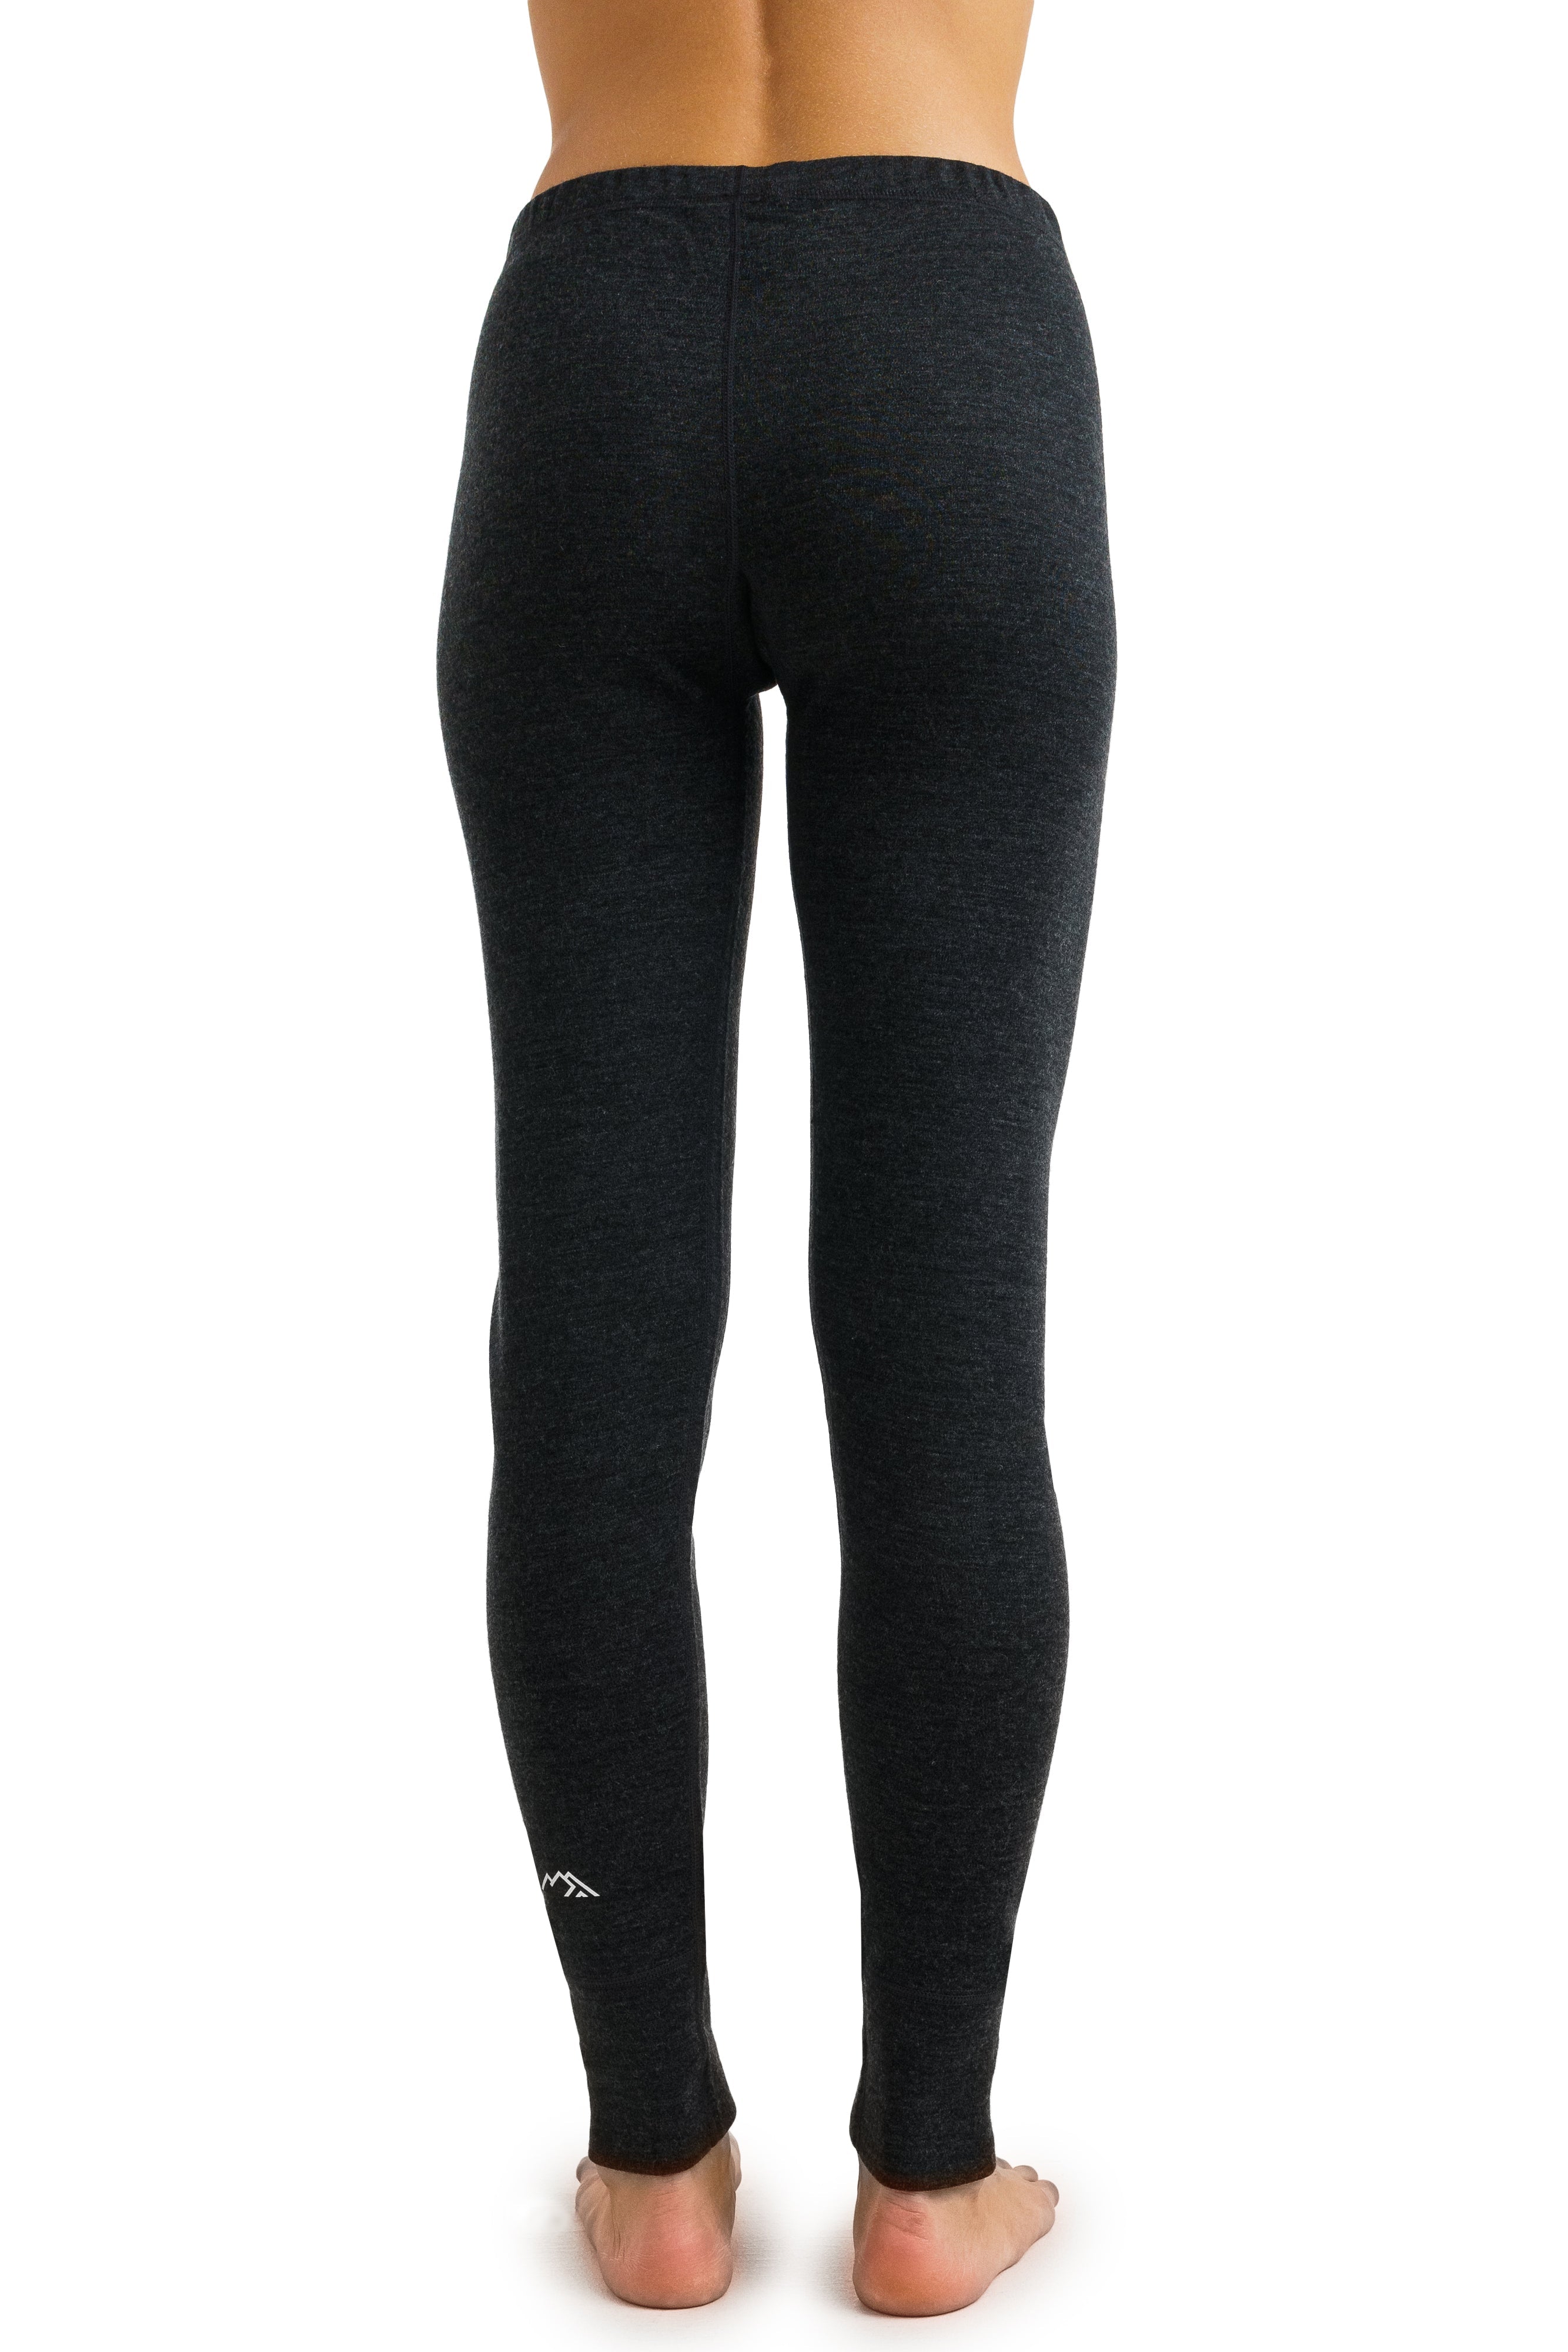 Women's Base Layer Pants – Merino Tech